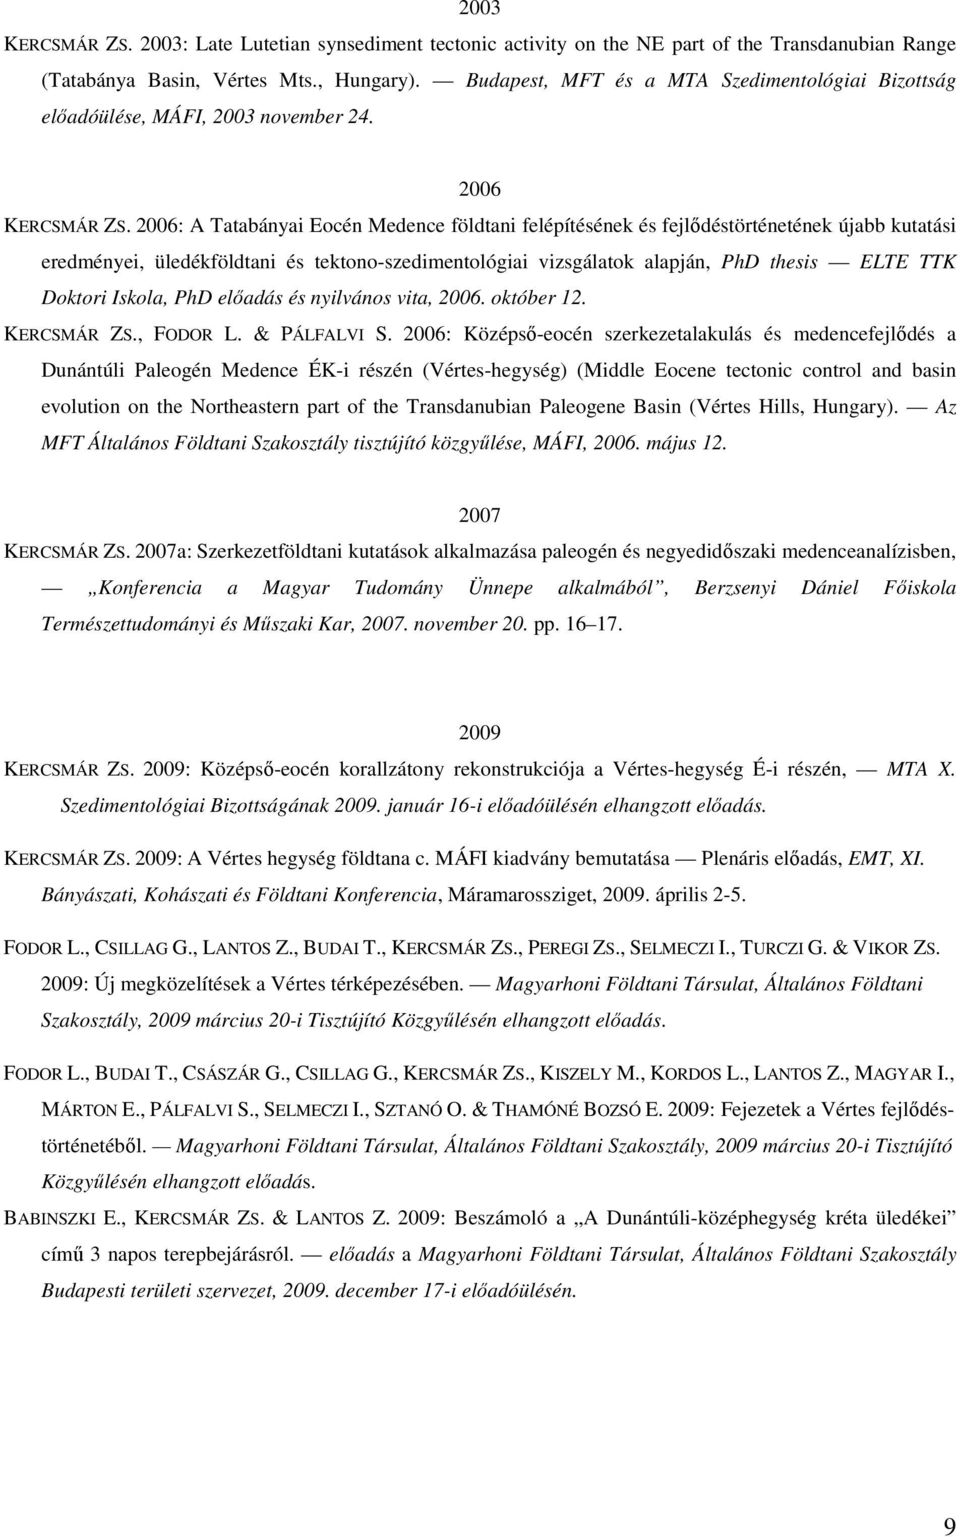 2006: A Tatabányai Eocén Medence földtani felépítésének és fejlődéstörténetének újabb kutatási eredményei, üledékföldtani és tektono-szedimentológiai vizsgálatok alapján, PhD thesis ELTE TTK Doktori